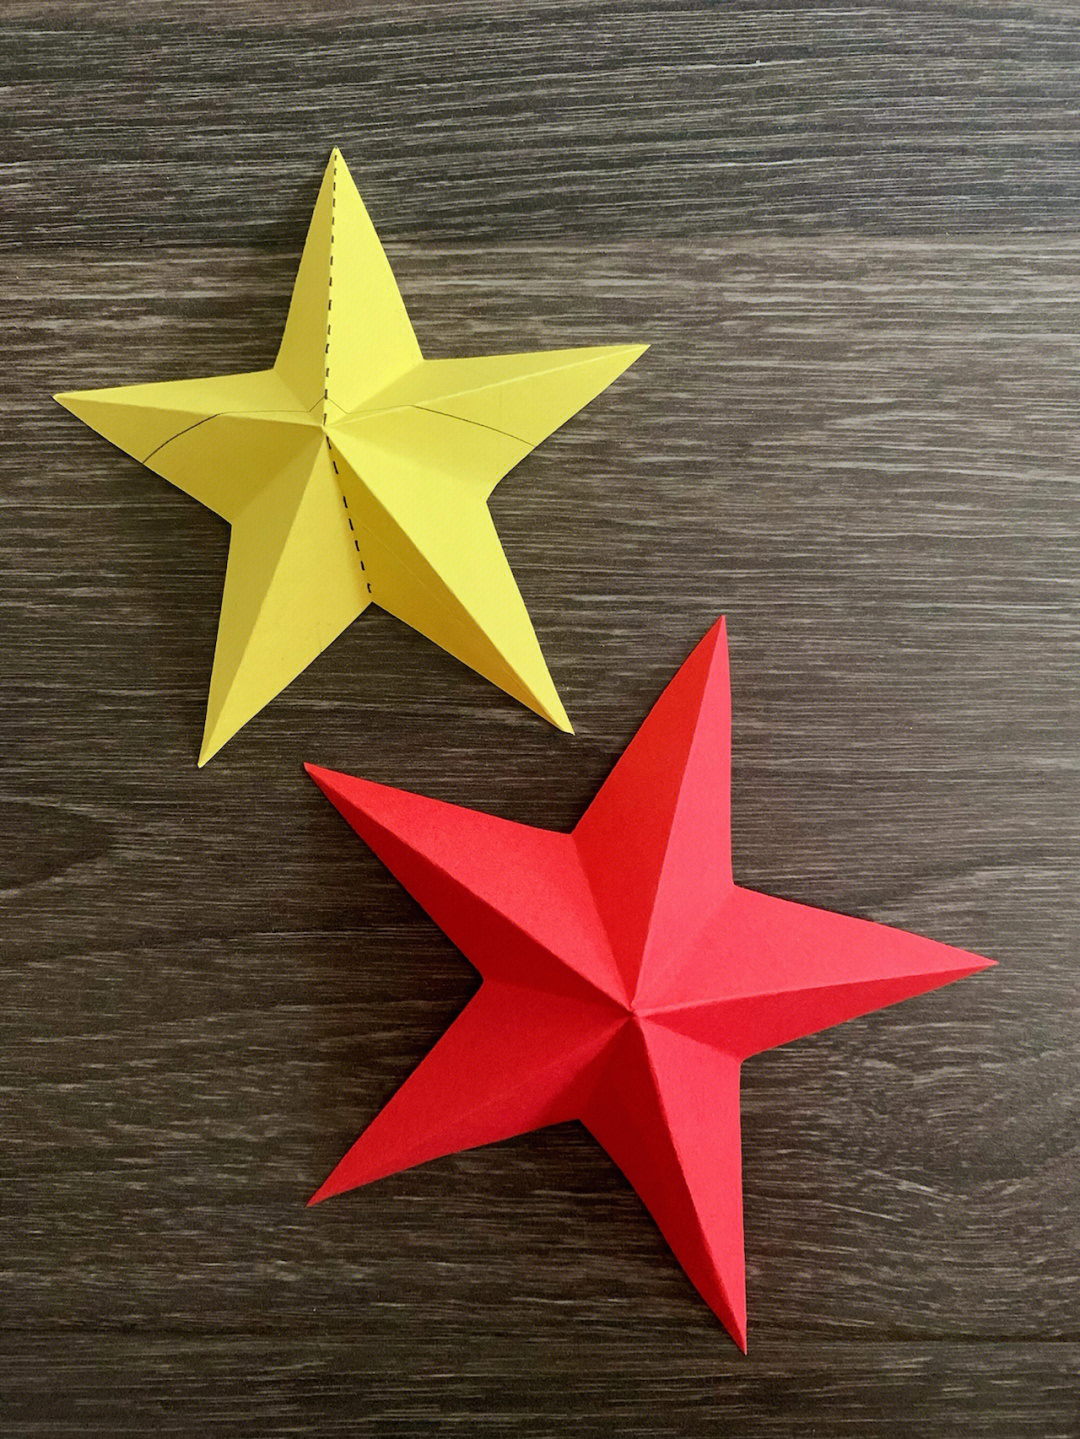 五角星最简单的剪法图片